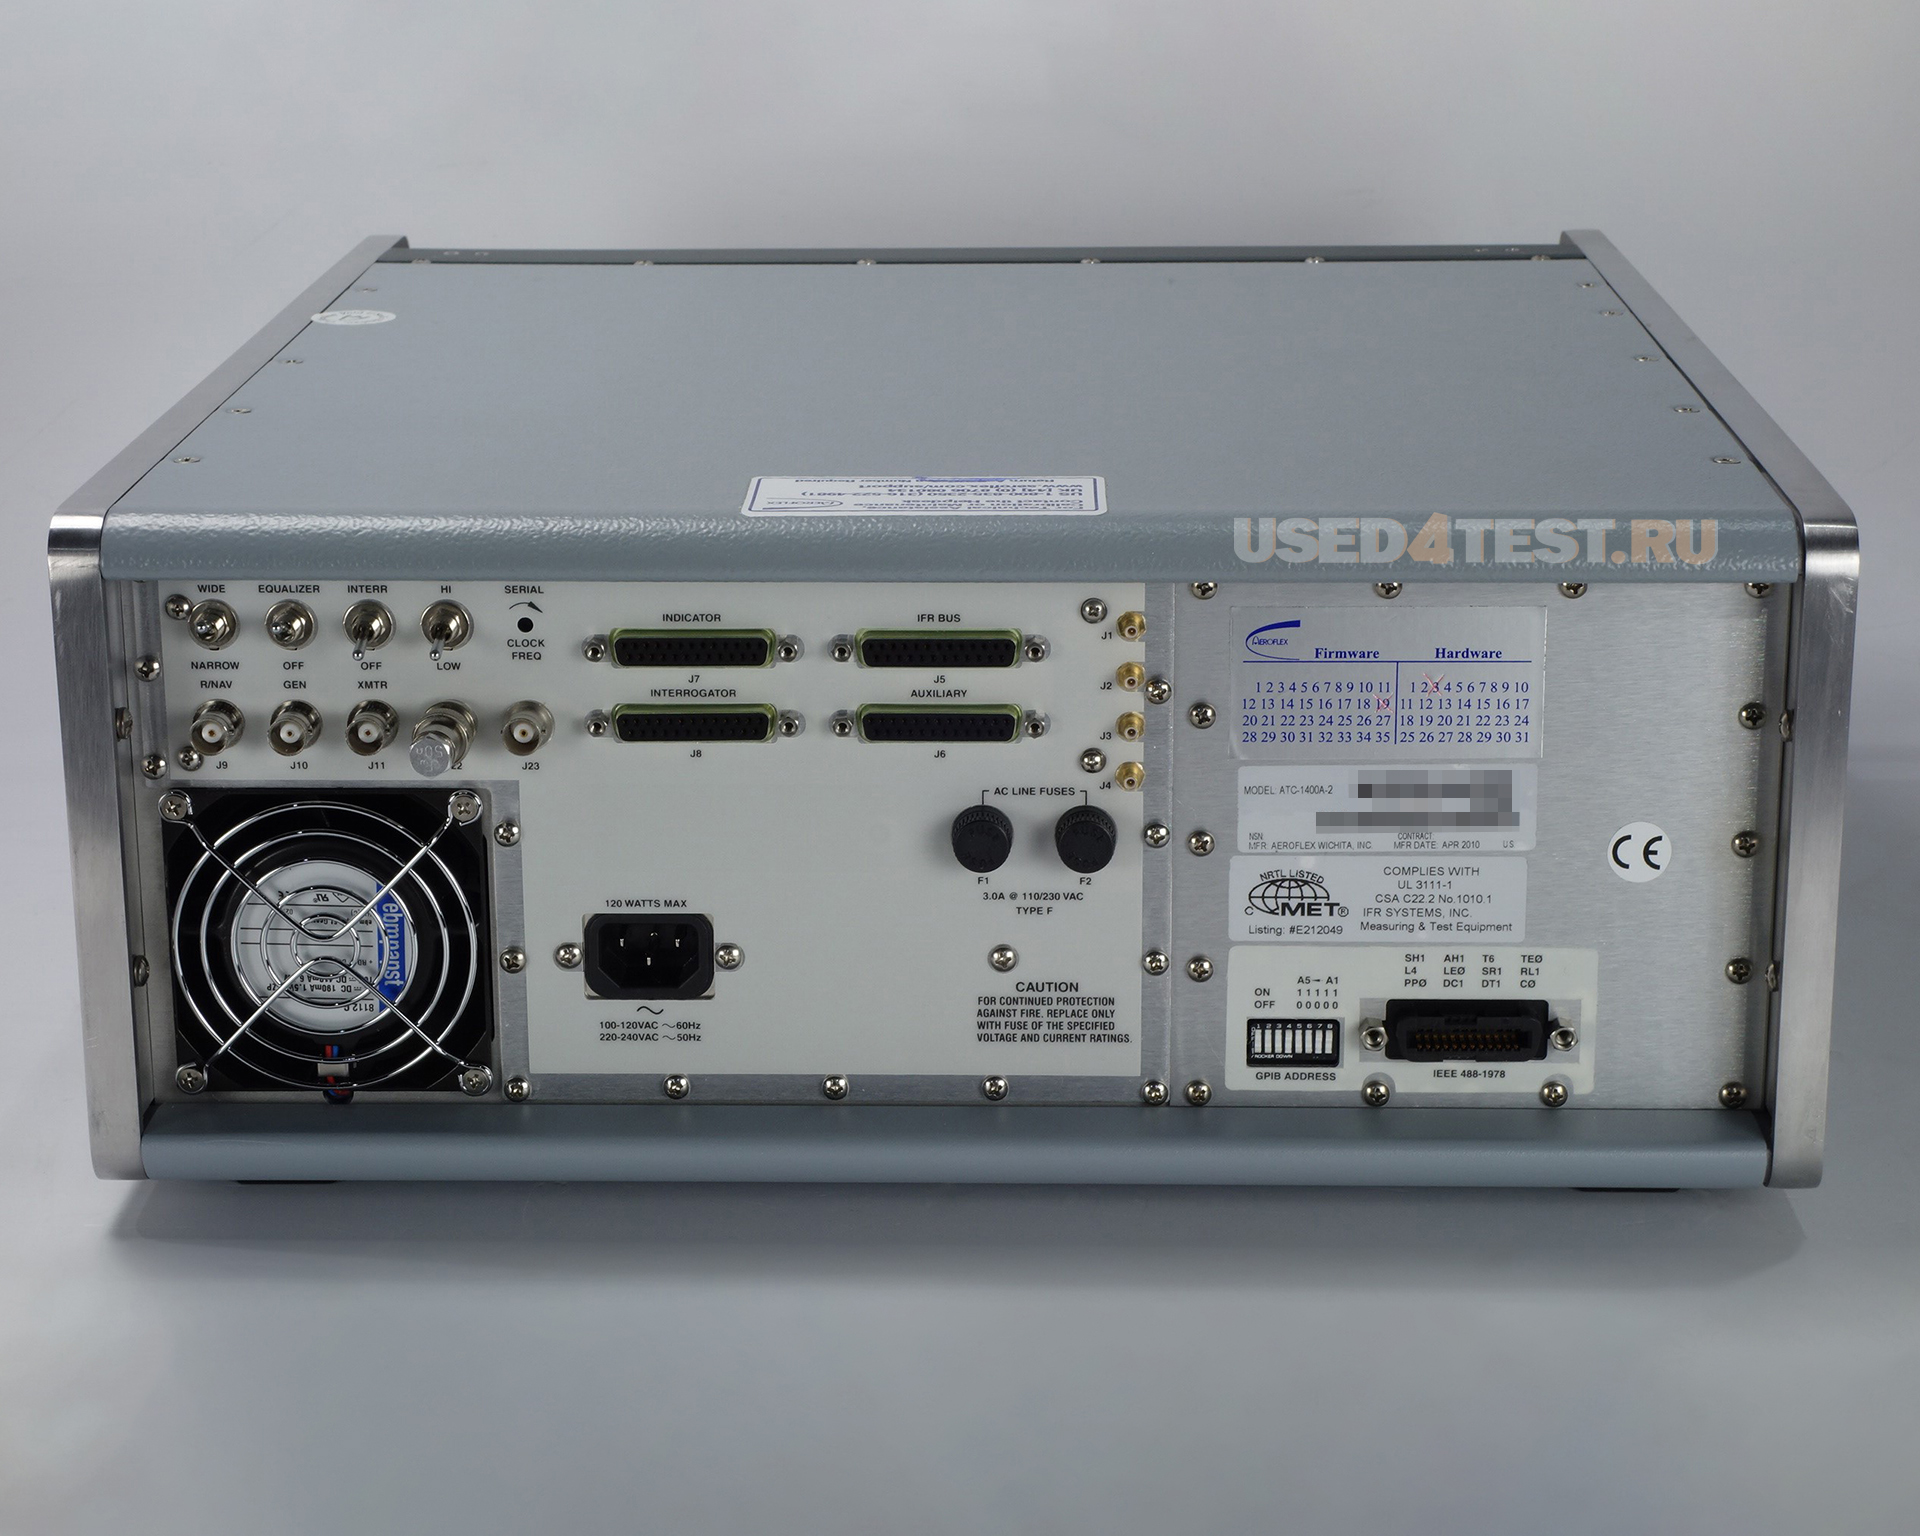 Генератор сигналов IFR ATC-1400A
 Стоимость указана в Рублях DDP Москва по безналичному расчету включая НДС 20%
